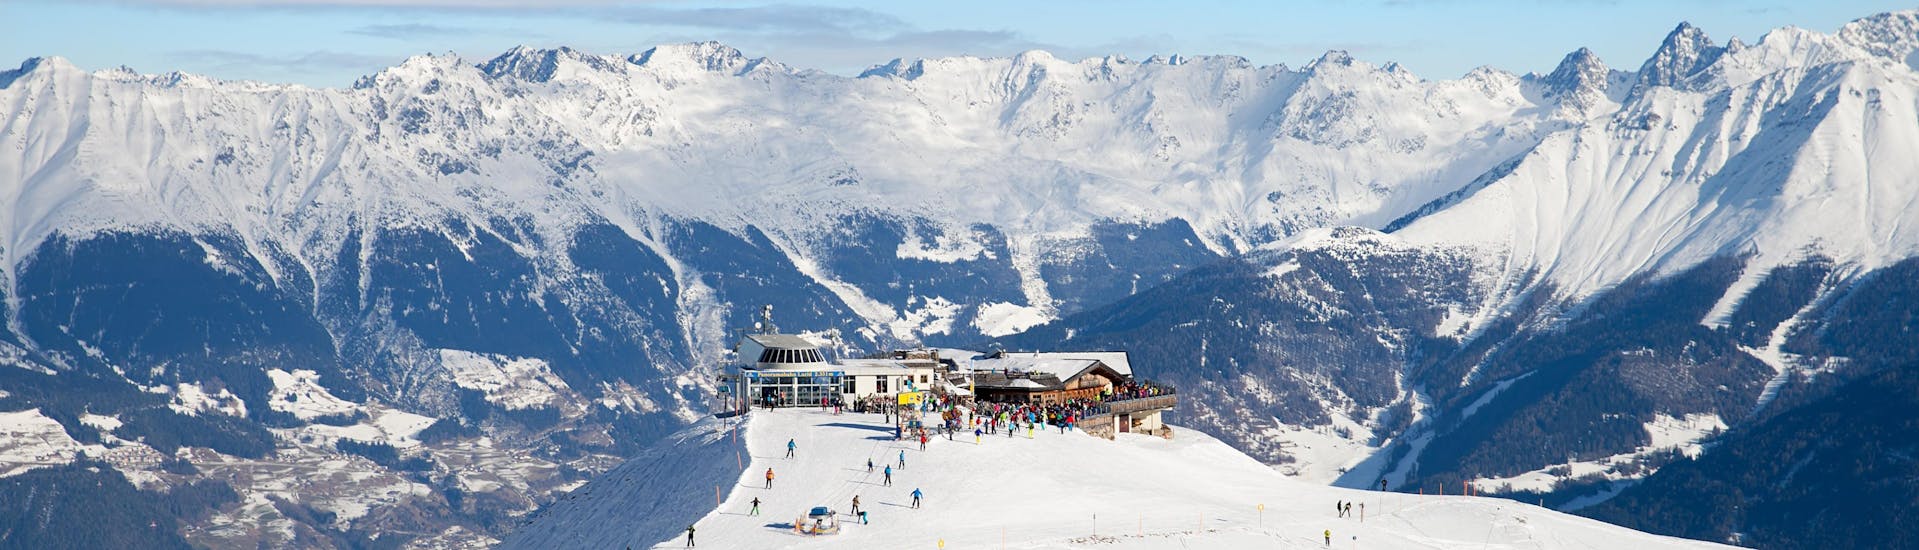 Imagen de la vista panorámica desde el Lazidbahn en la estación de esquí Serfaus-Fiss-Ladis.